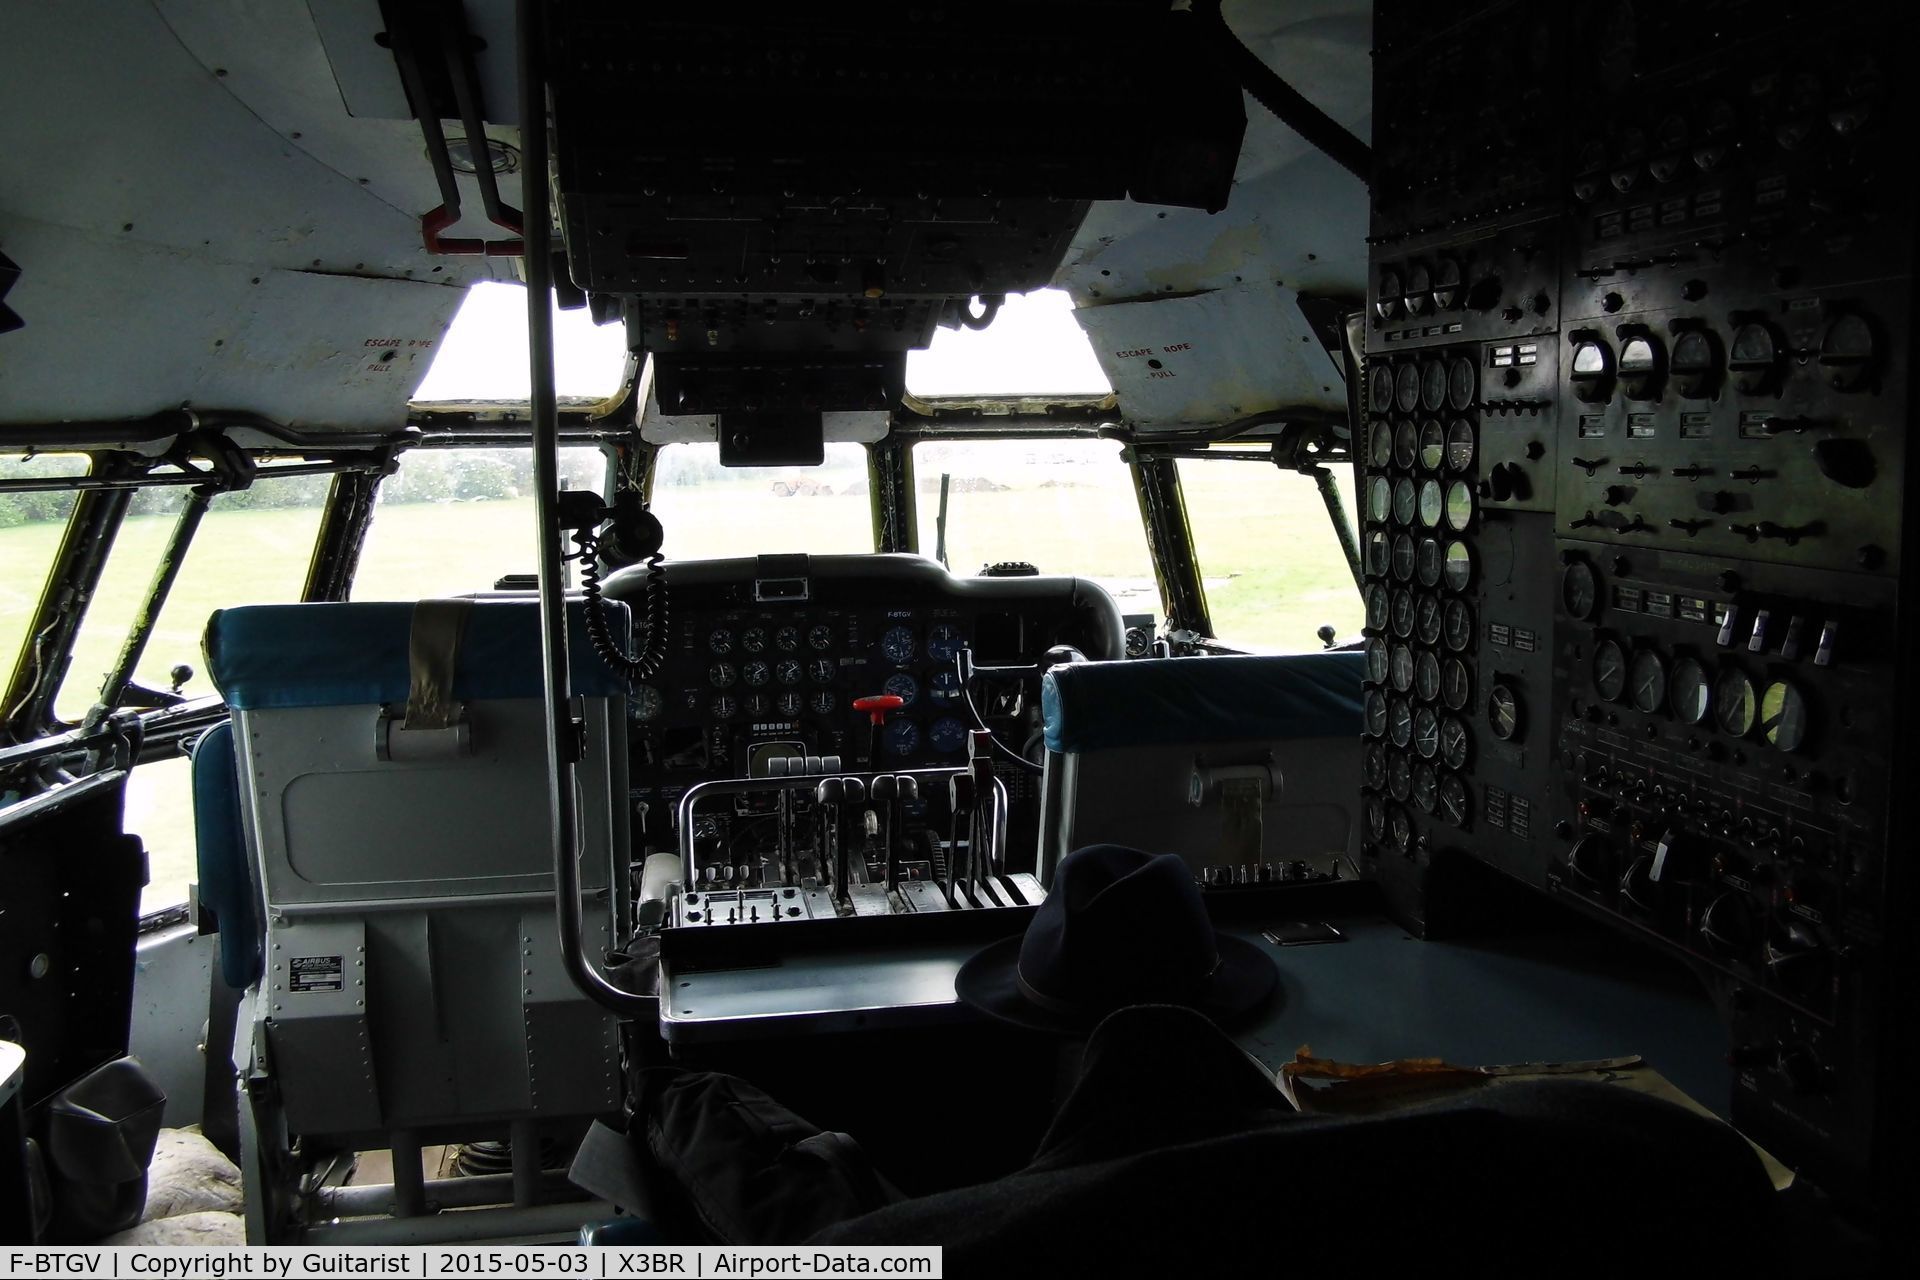 F-BTGV, Aero Spacelines 377SGT Super Guppy Turbine C/N 0001, Cockpit of a Guppy